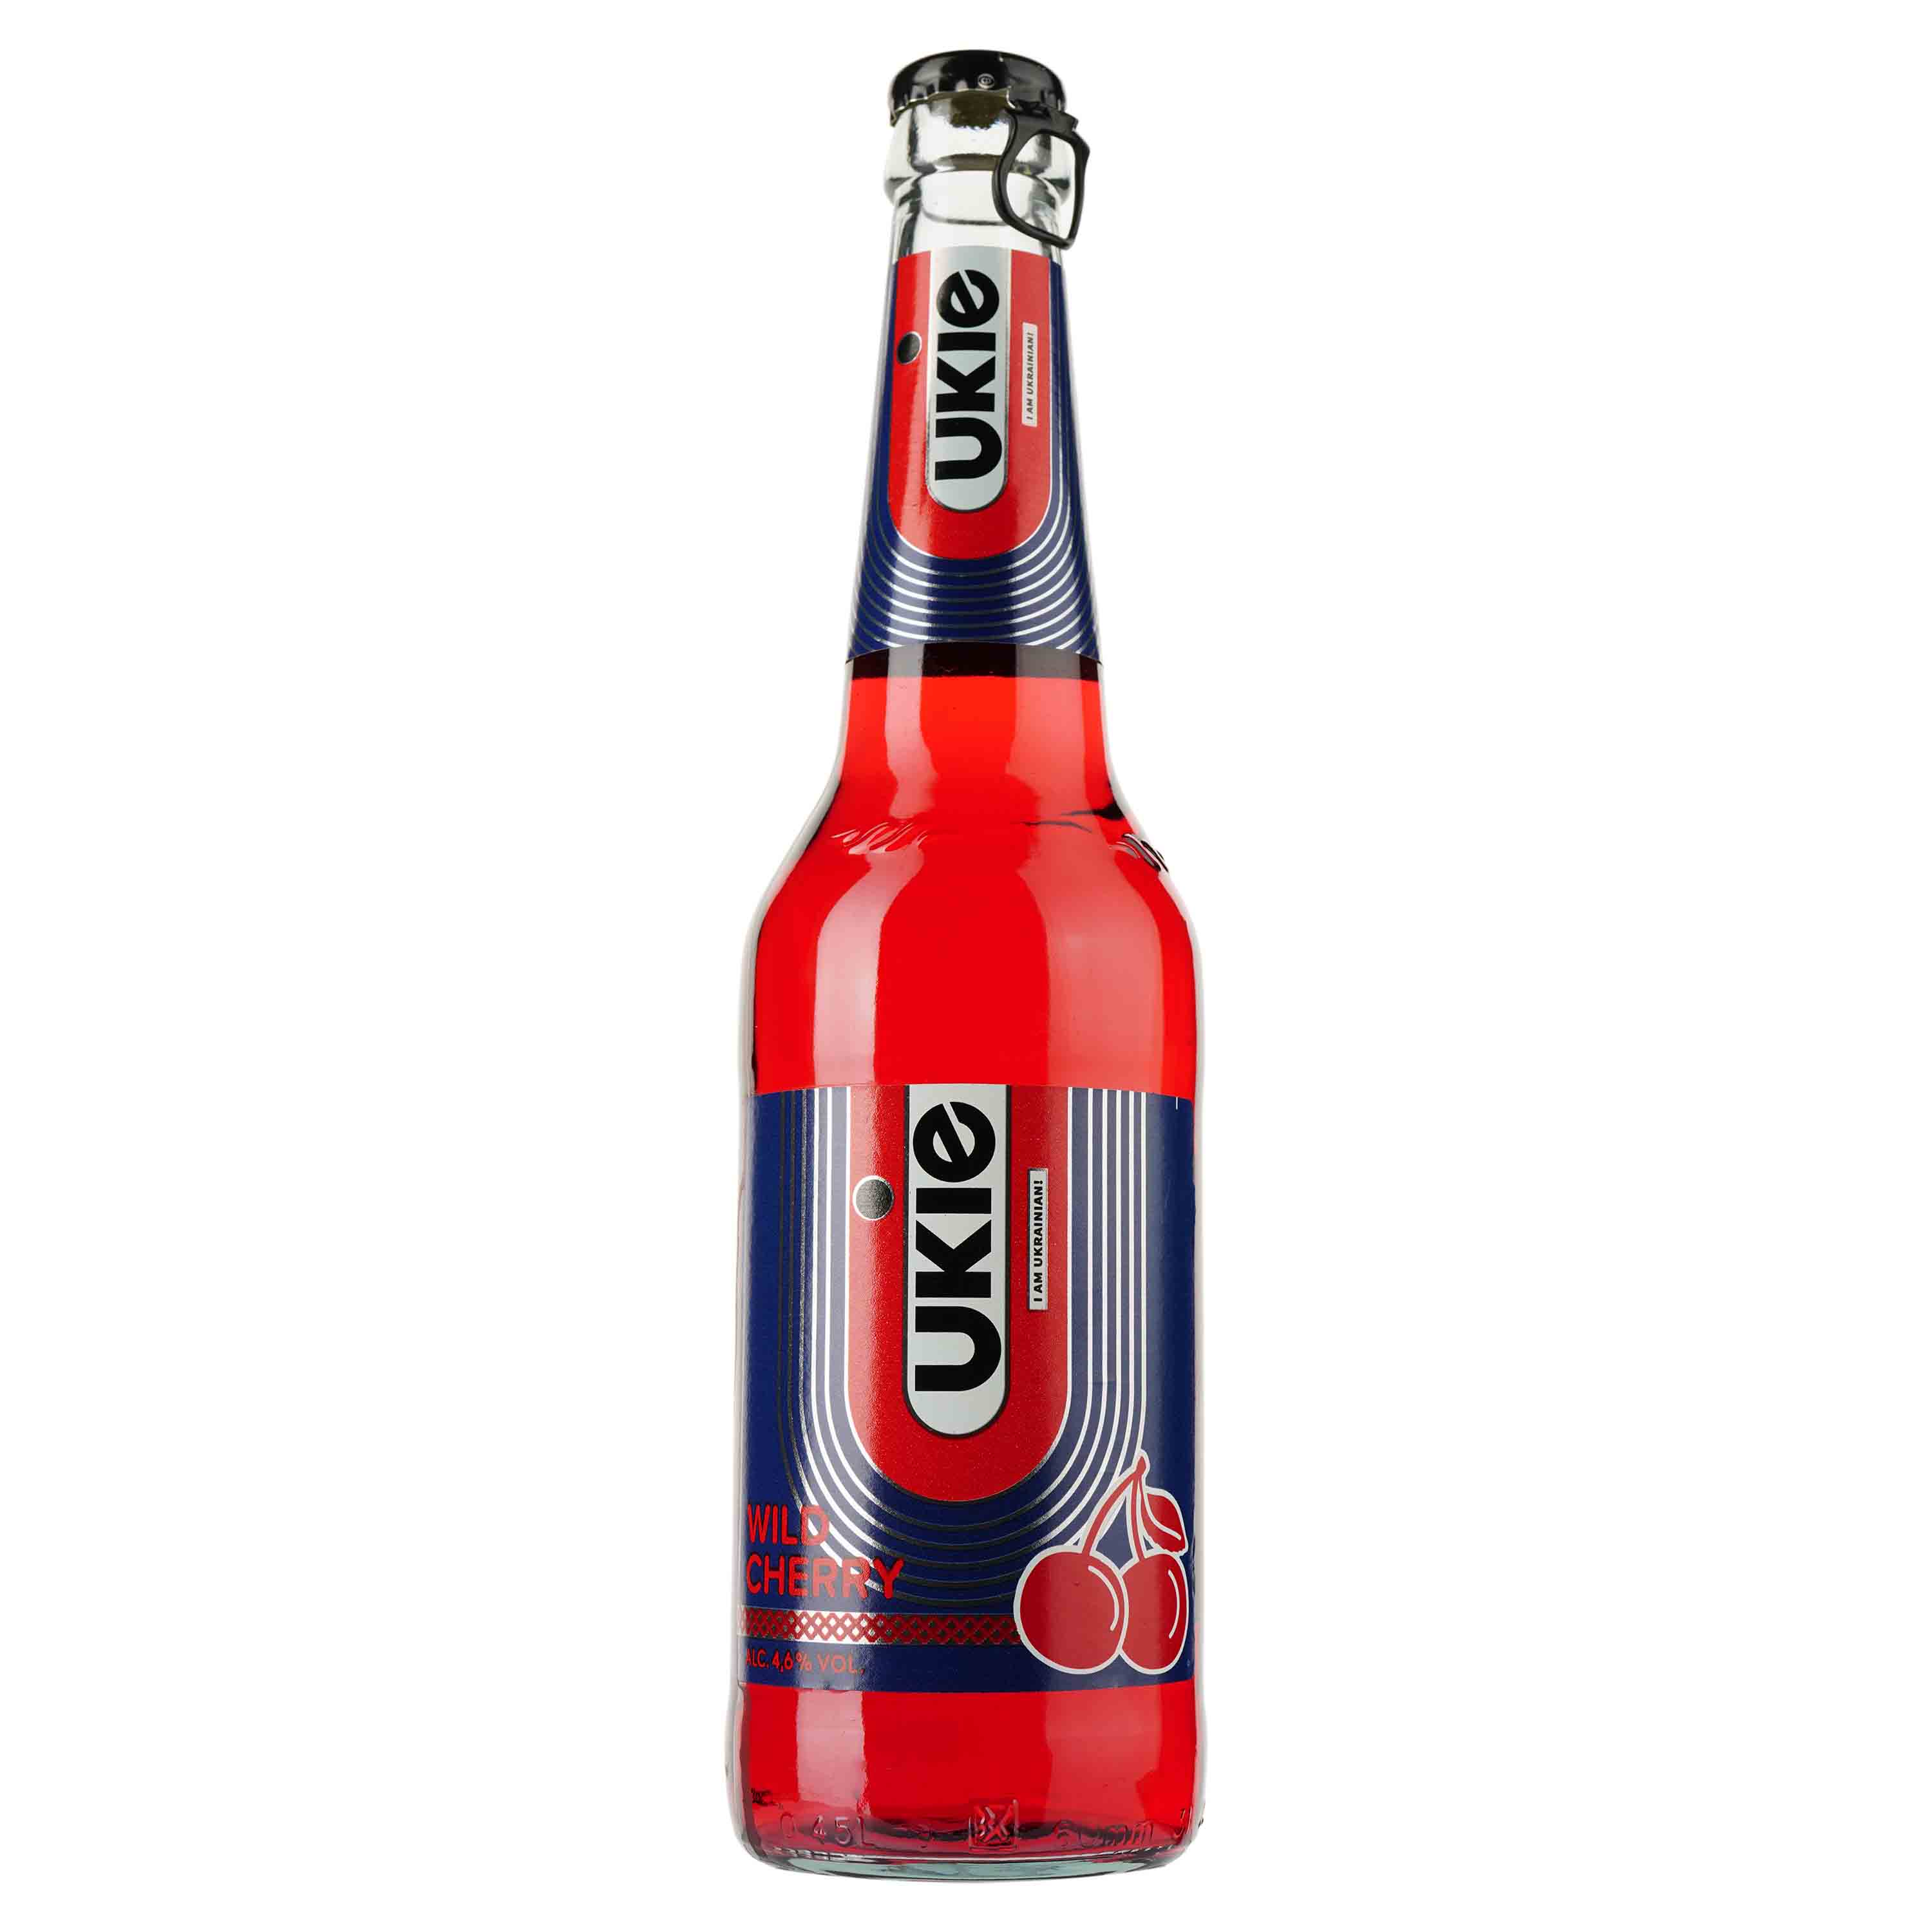 Пиво Ukie Wild Cherry, светлое, 4,6%, 0,45 л (909154) - фото 1